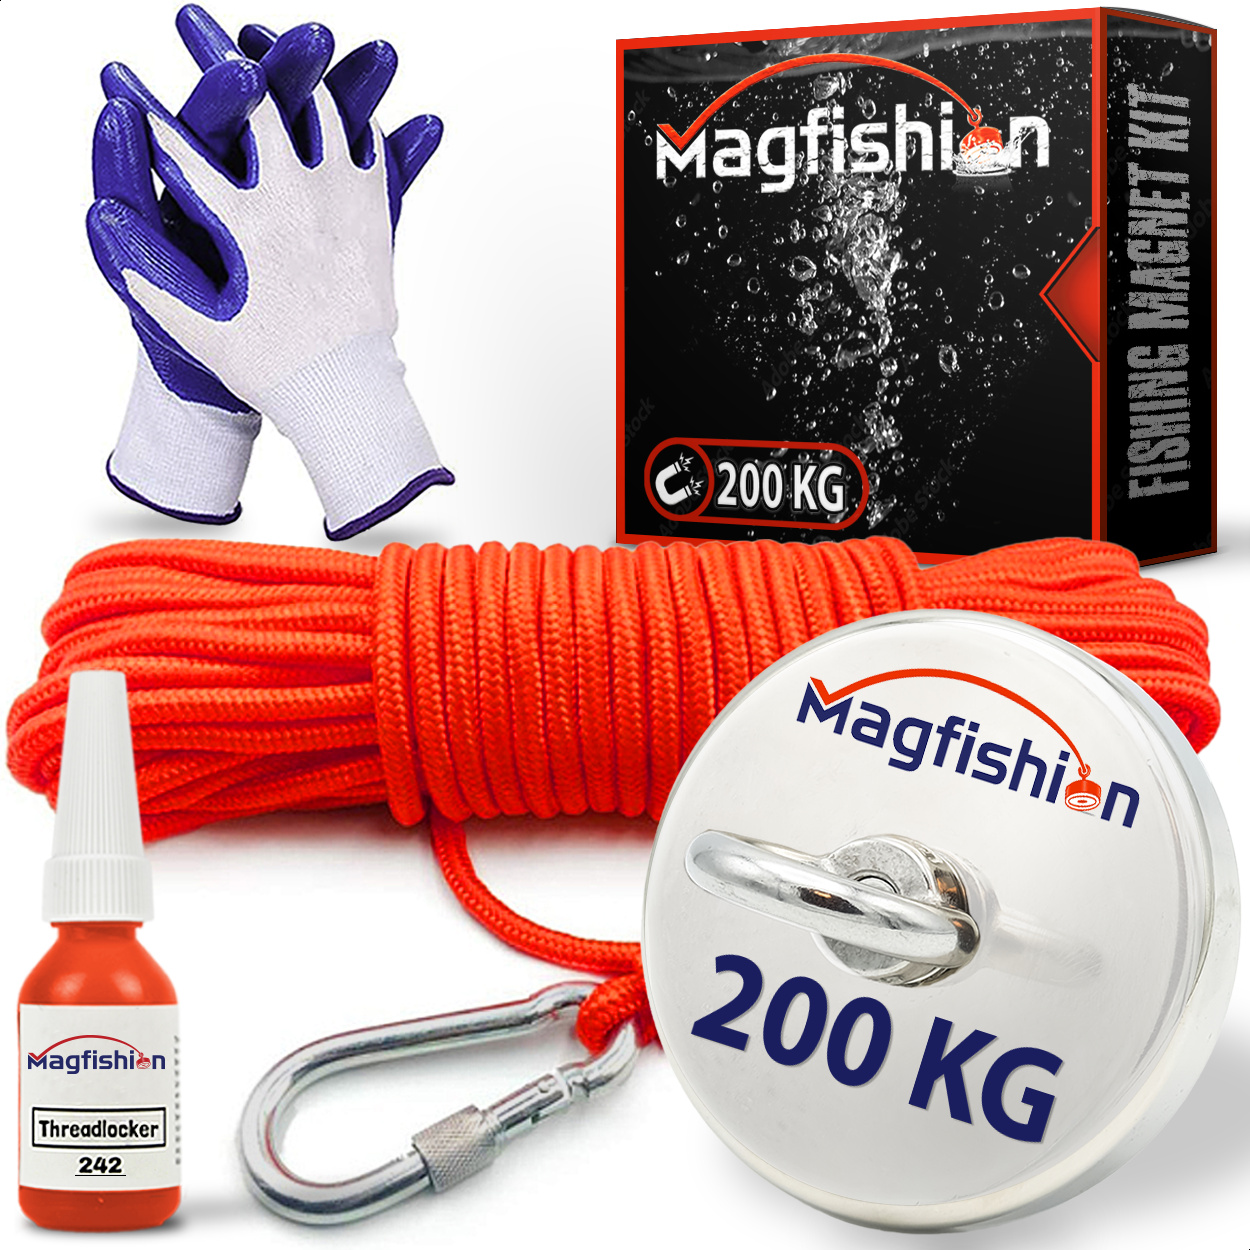 Magnetfischen Magnet 700KG Schraubensicherung und 136mmHandschuhe 